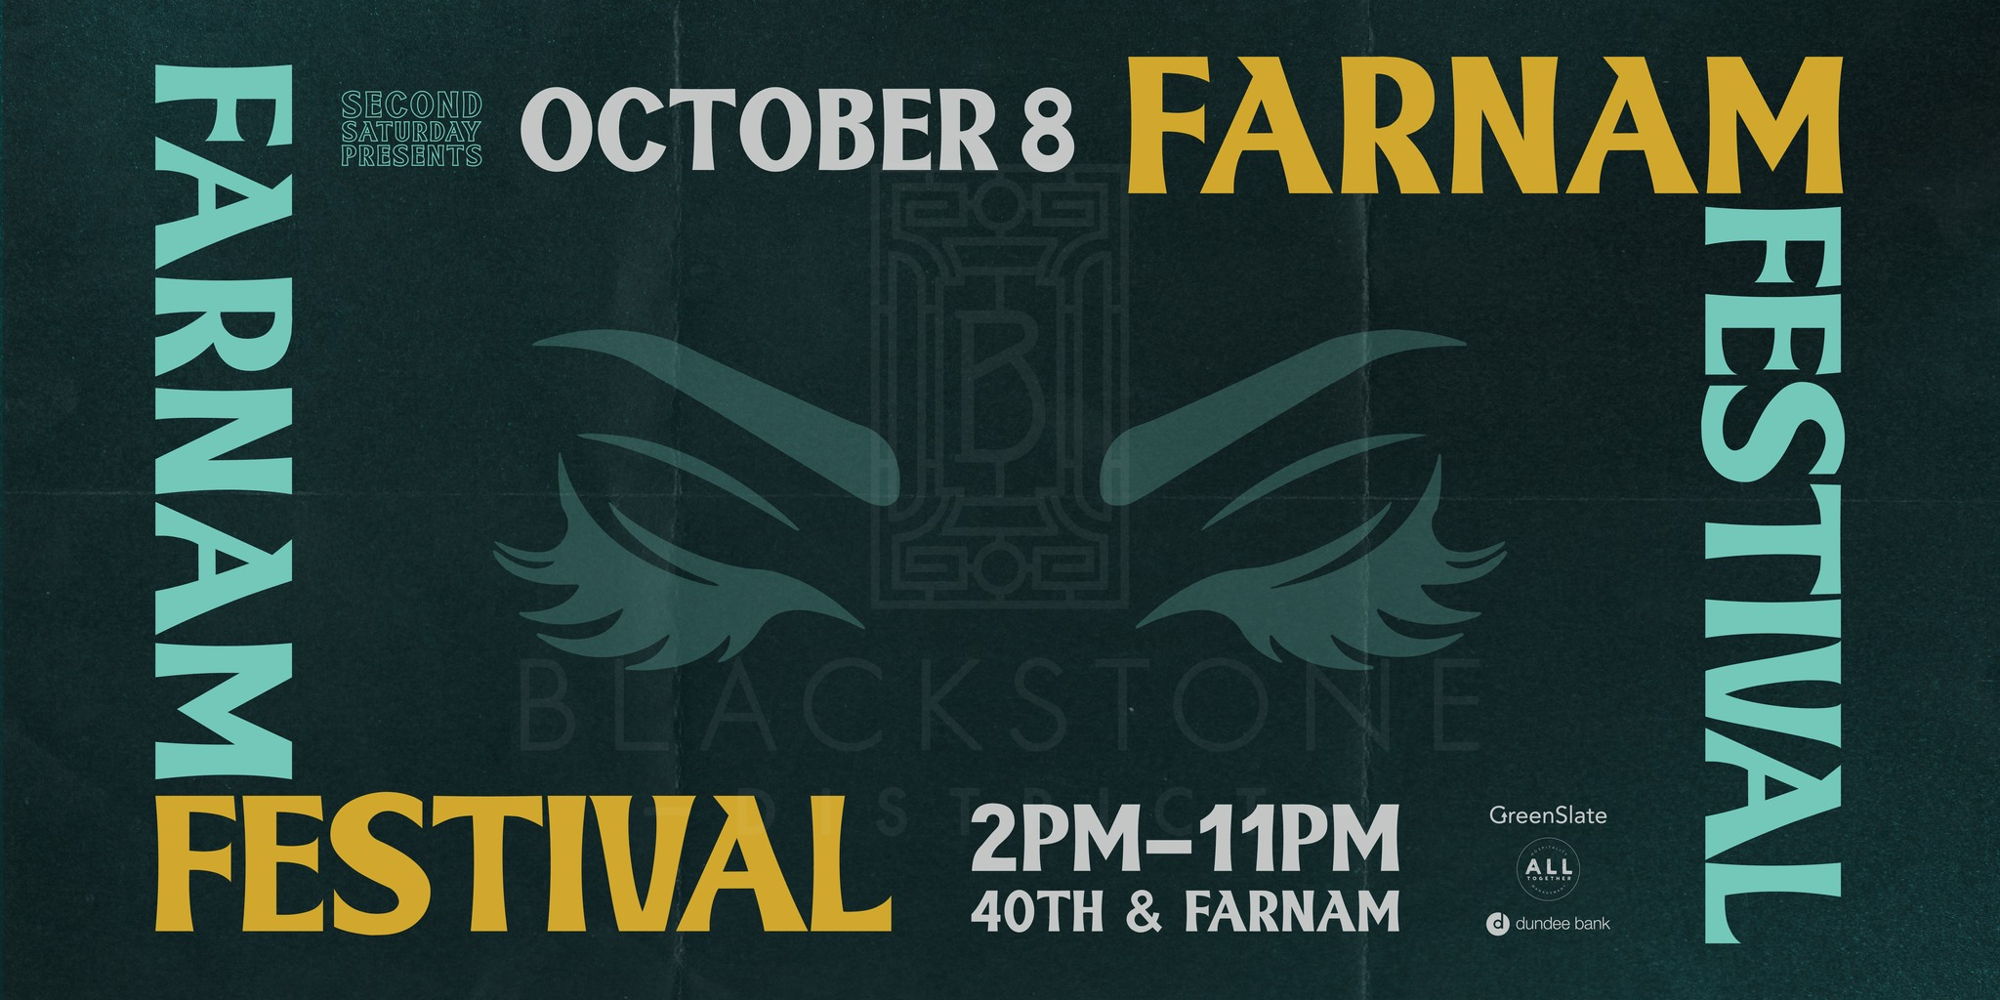 Farnam Festival 2022 promotional image